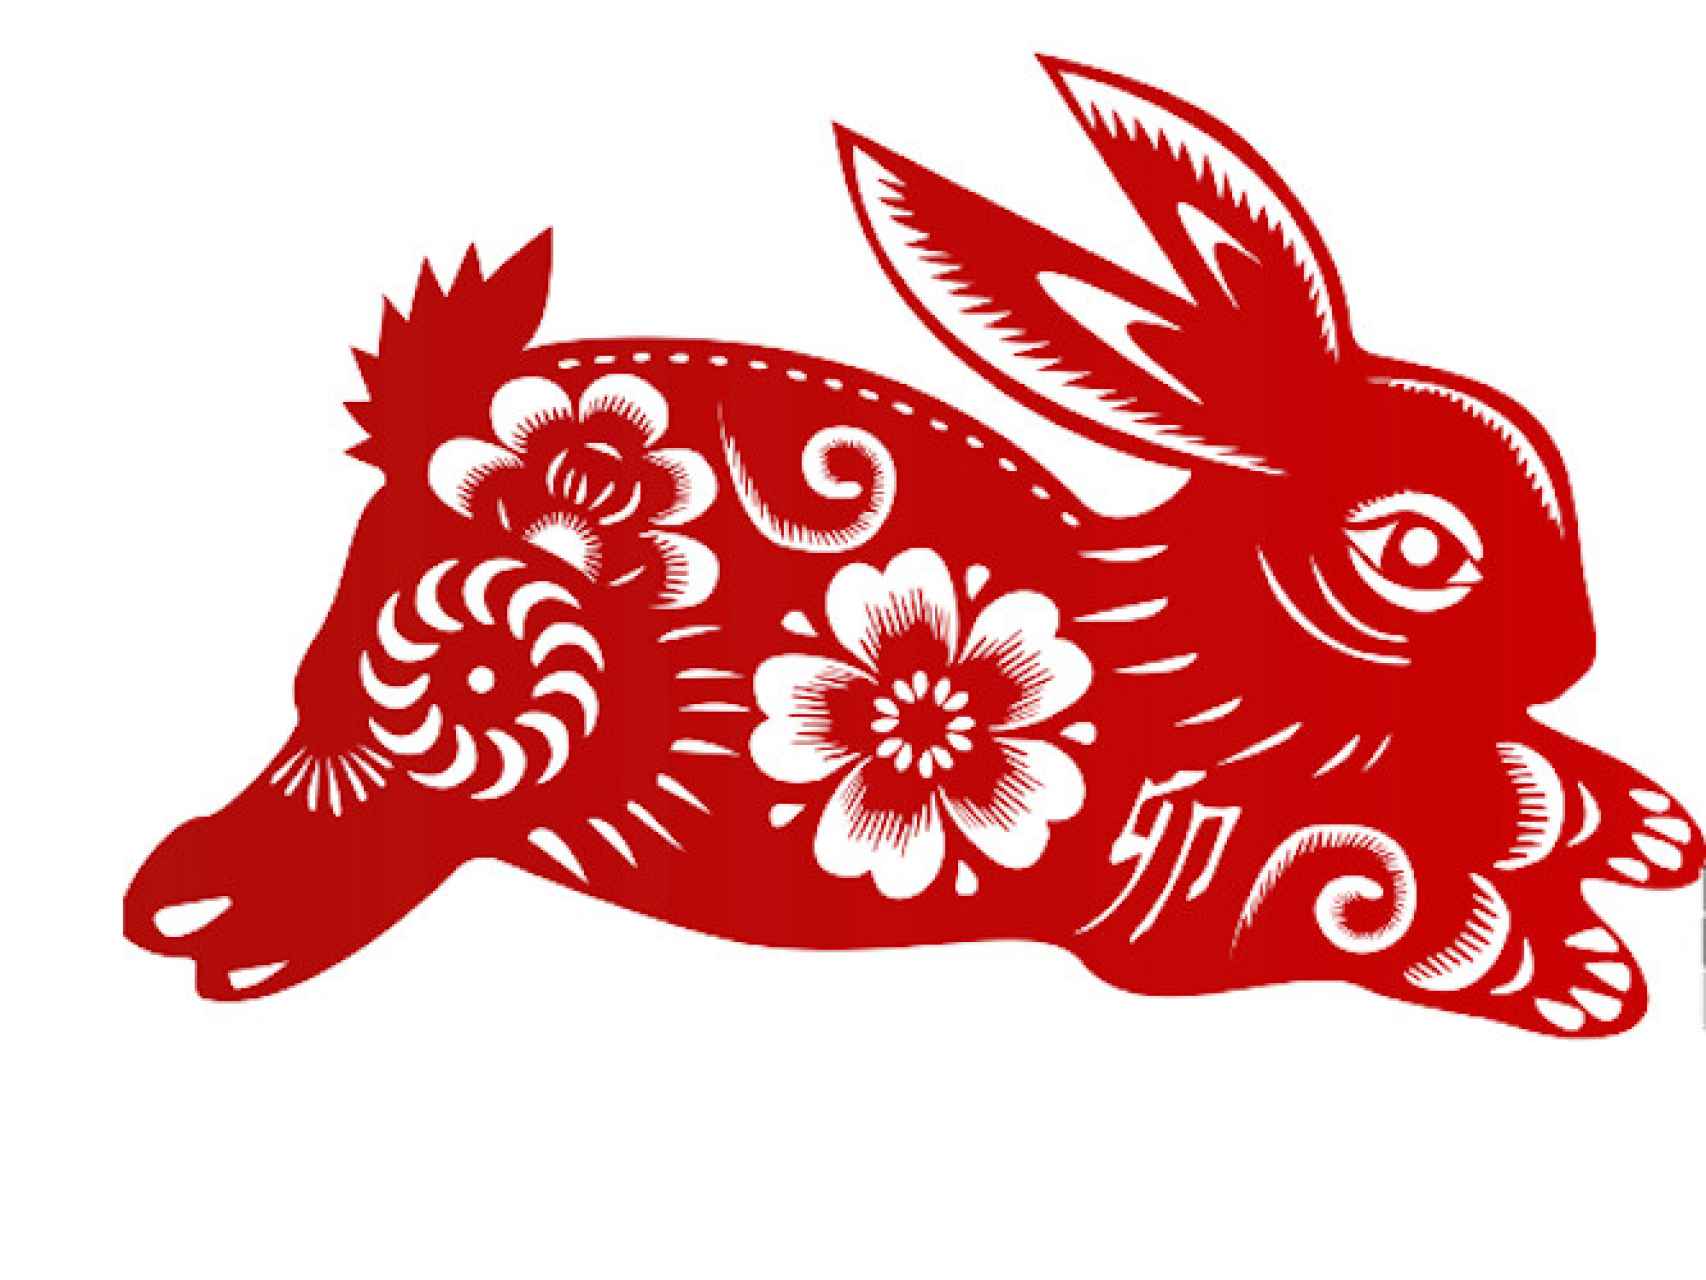 El conejo chino.